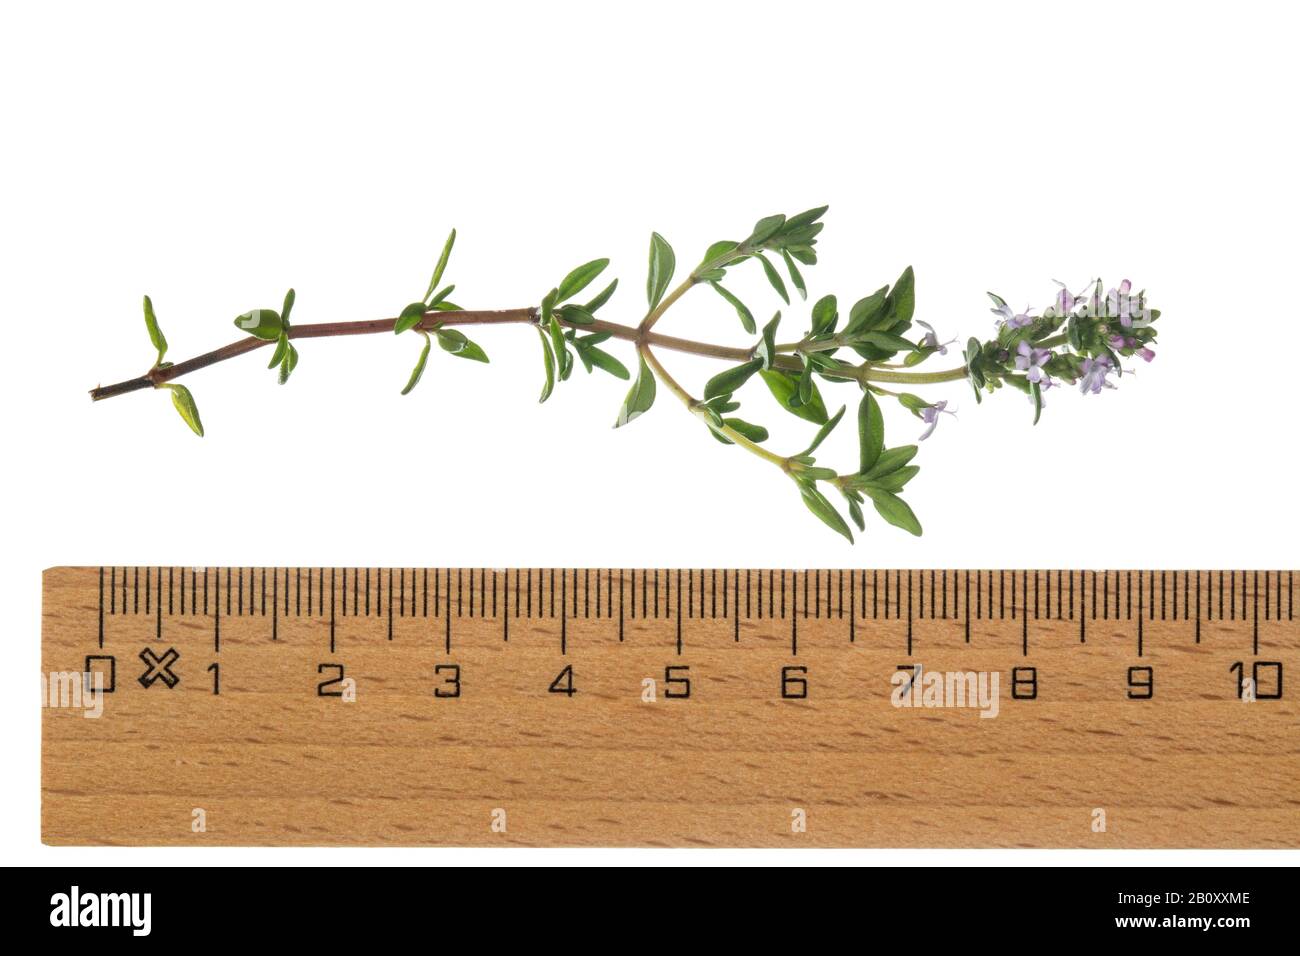 Thym de jardin, thym anglais, thym commun (Thymus vulgaris), branche florissante, découpe avec règle Banque D'Images